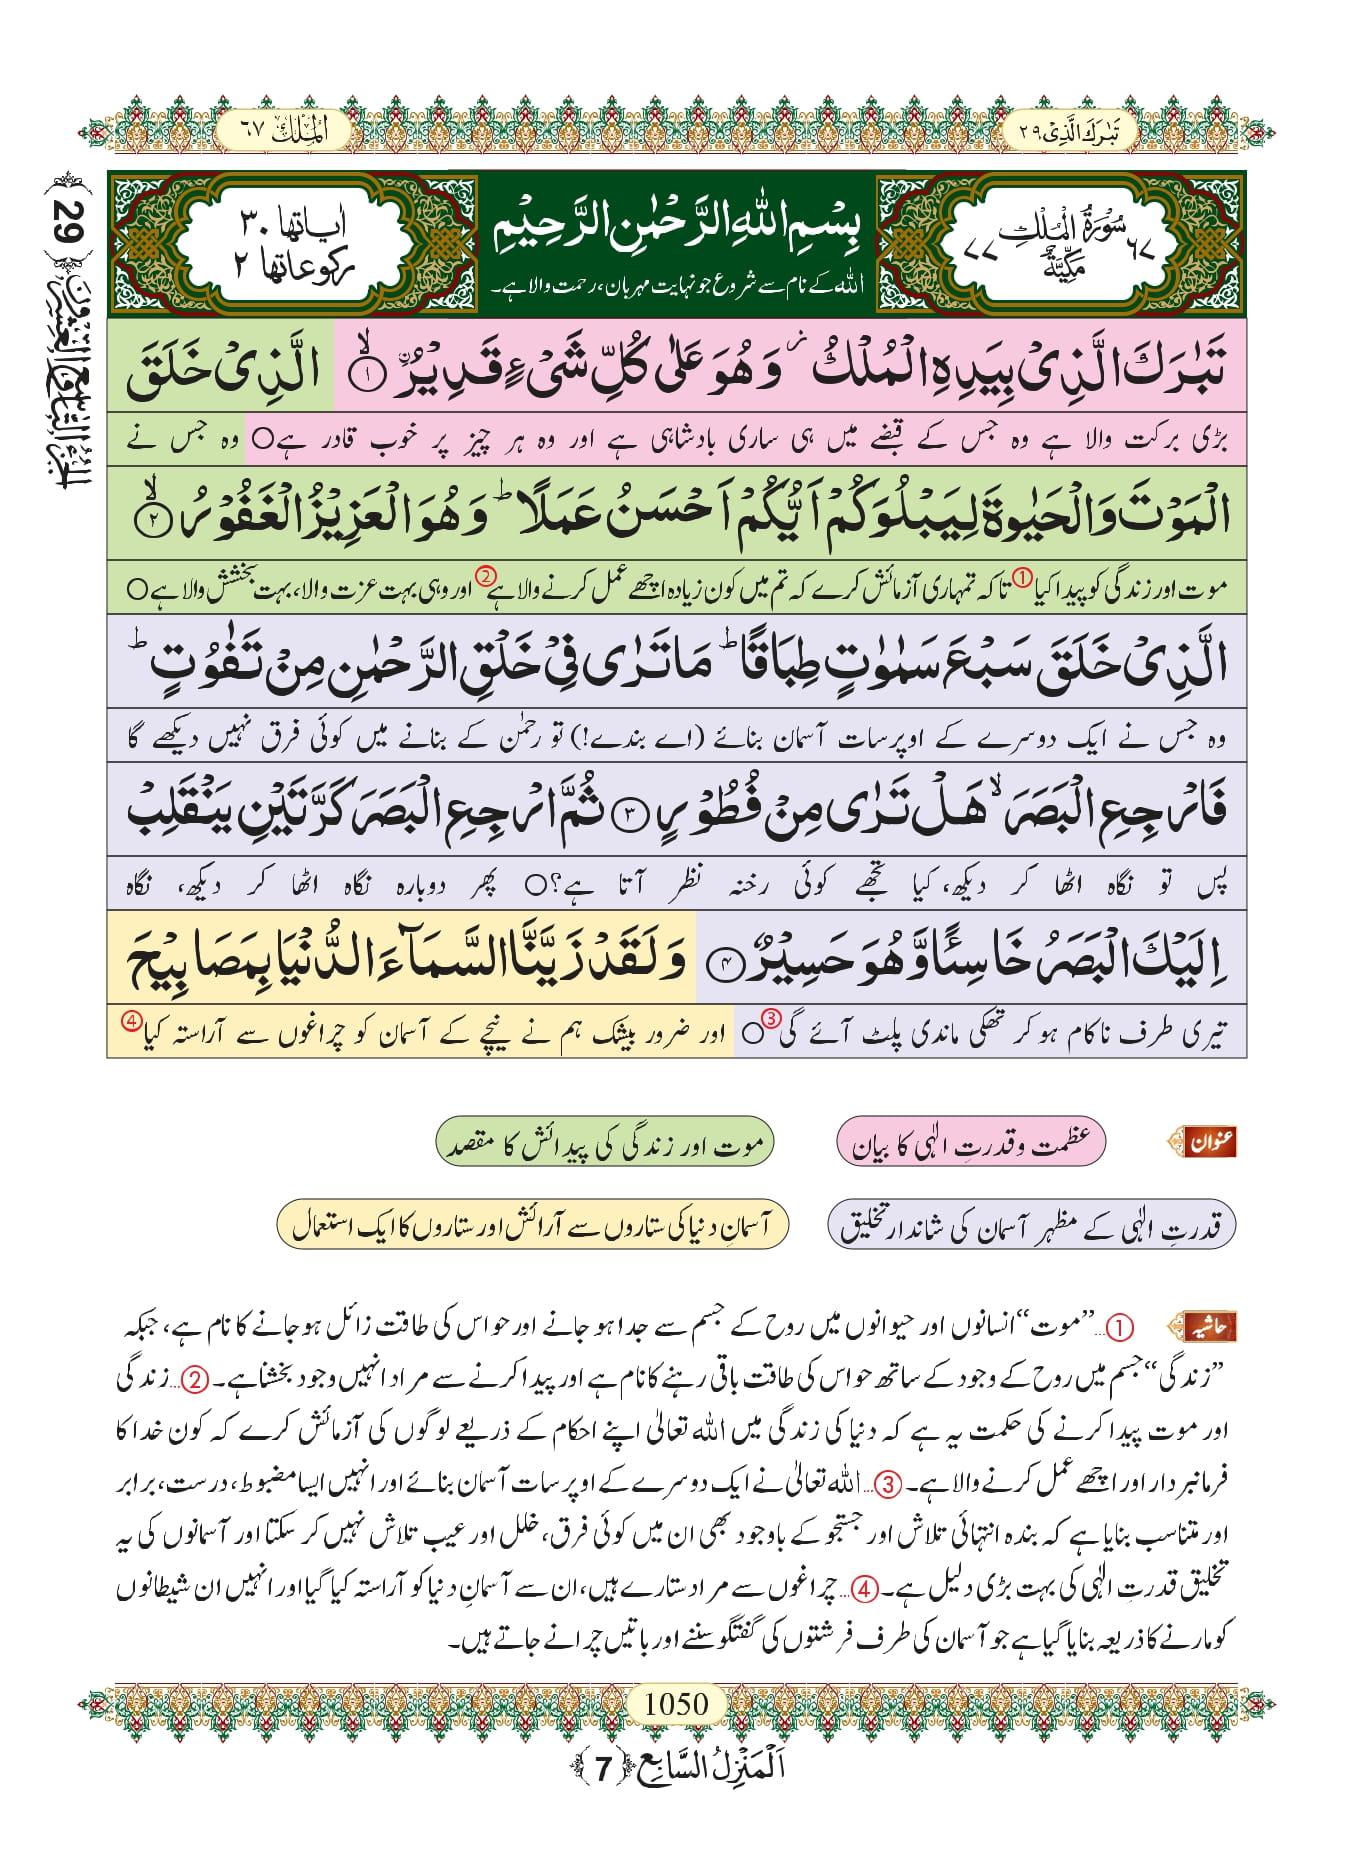 Read Surah Mulk Online Surah Al Mulk Pdf File Free Download In Arabic